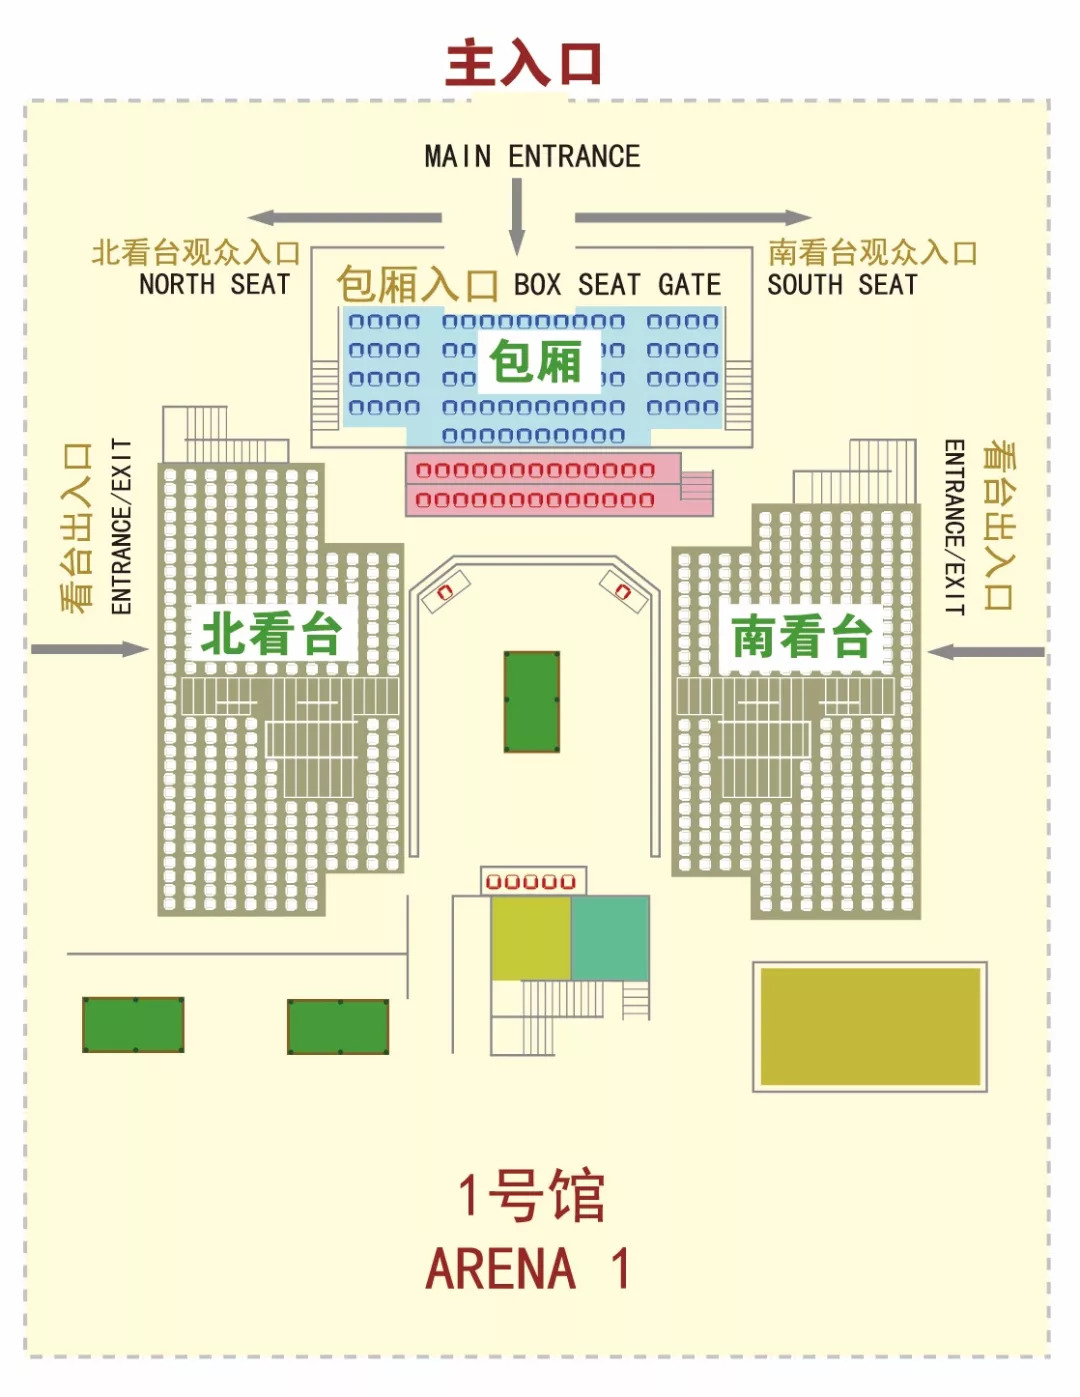 上海大师赛2013直播(上海大师赛观赛指南：签表、赛程、场馆、票务！重要信息全在！)